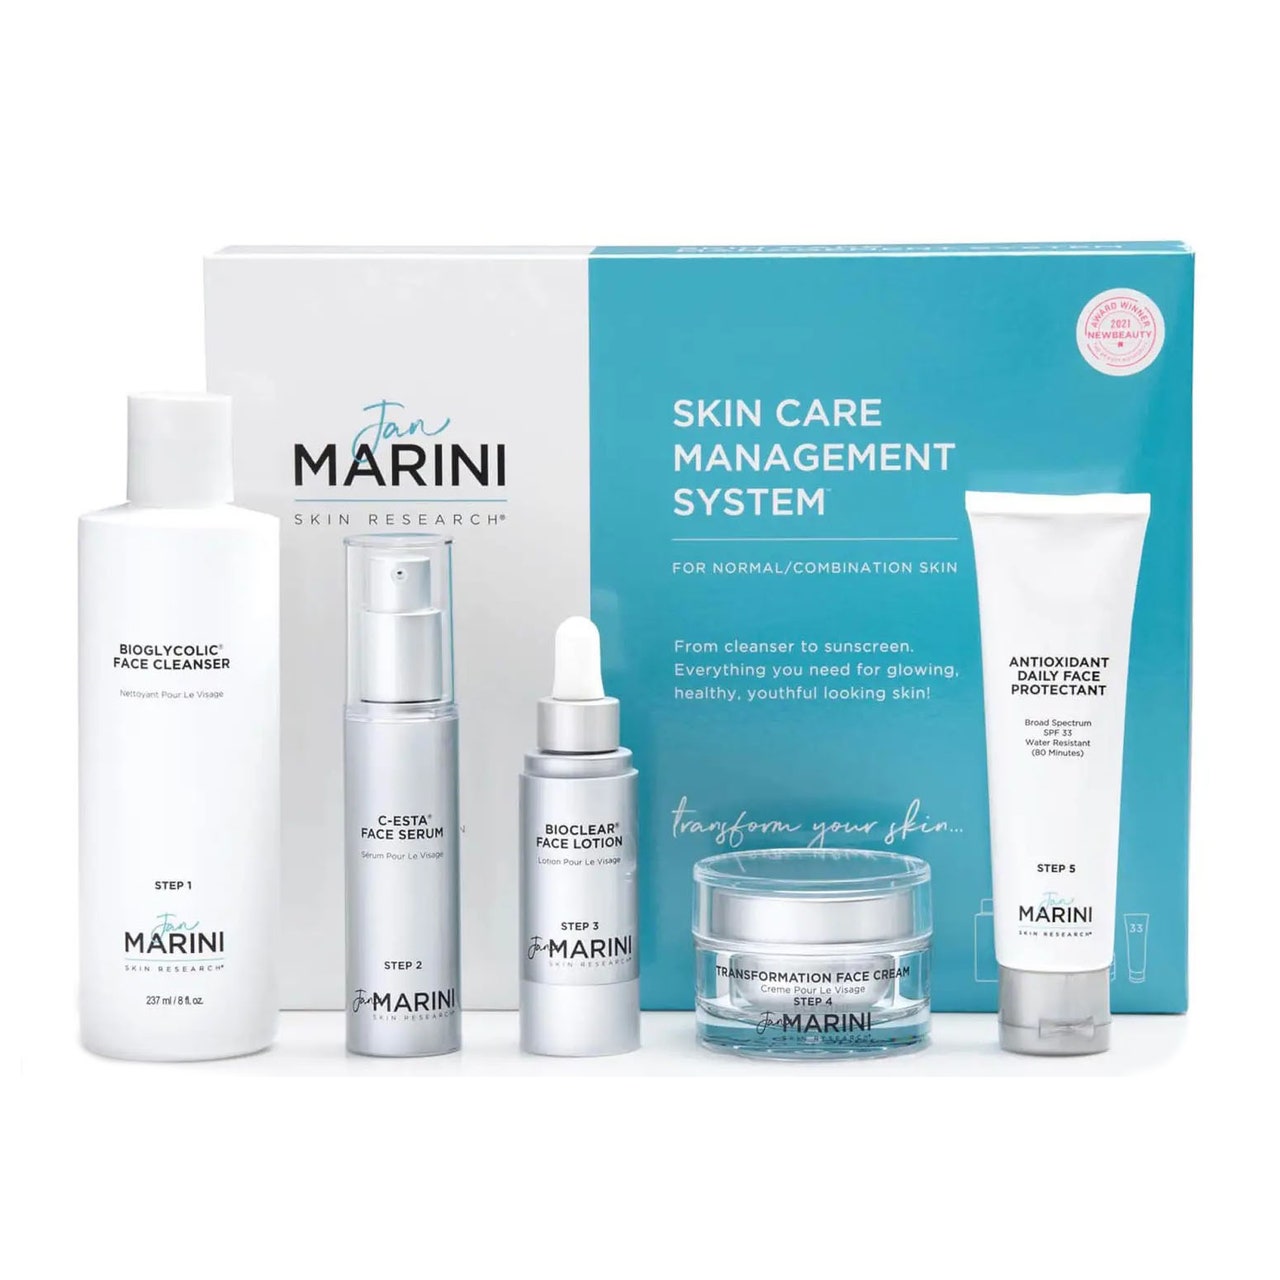 Jan Marini Skincare Management System blau-weißer Karton und fünf Produkte auf weißem Hintergrund